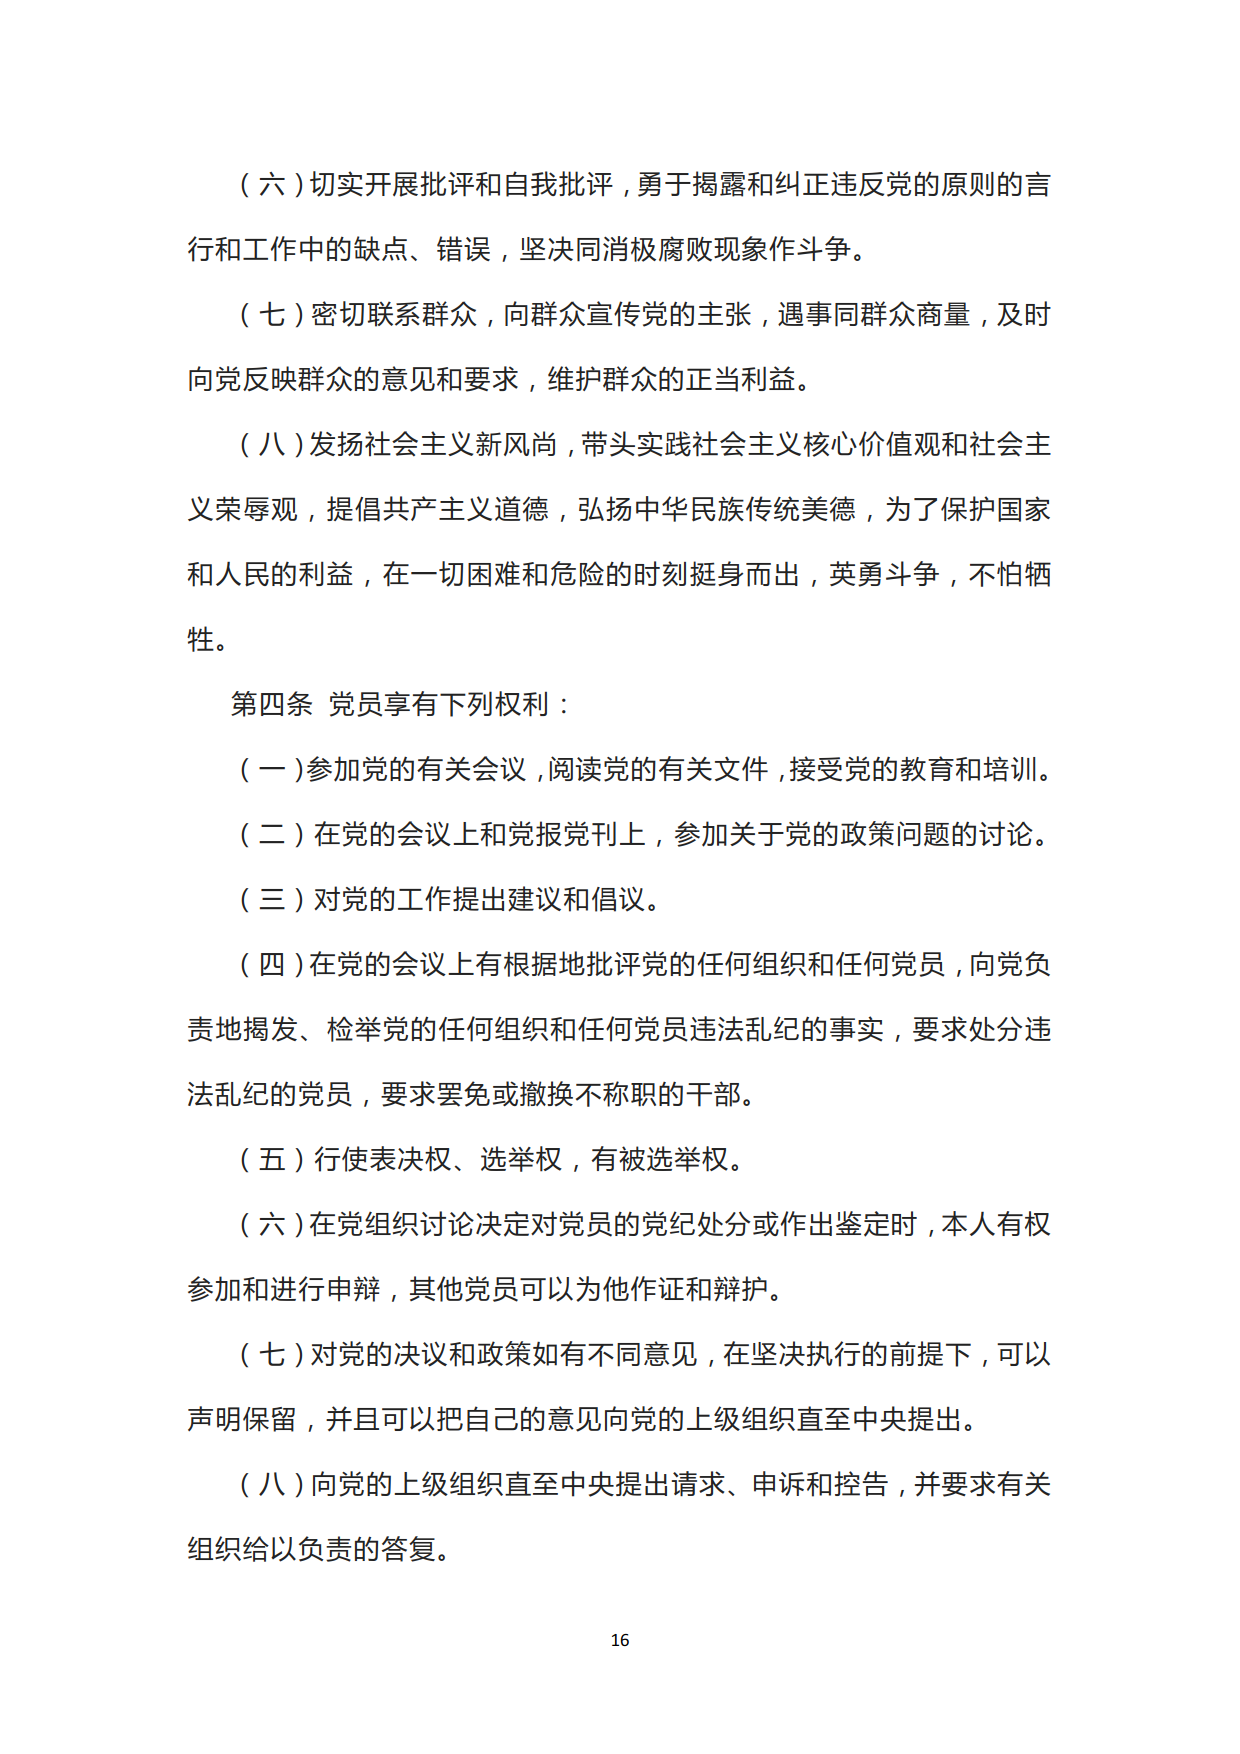 中国共产党章程_16.png